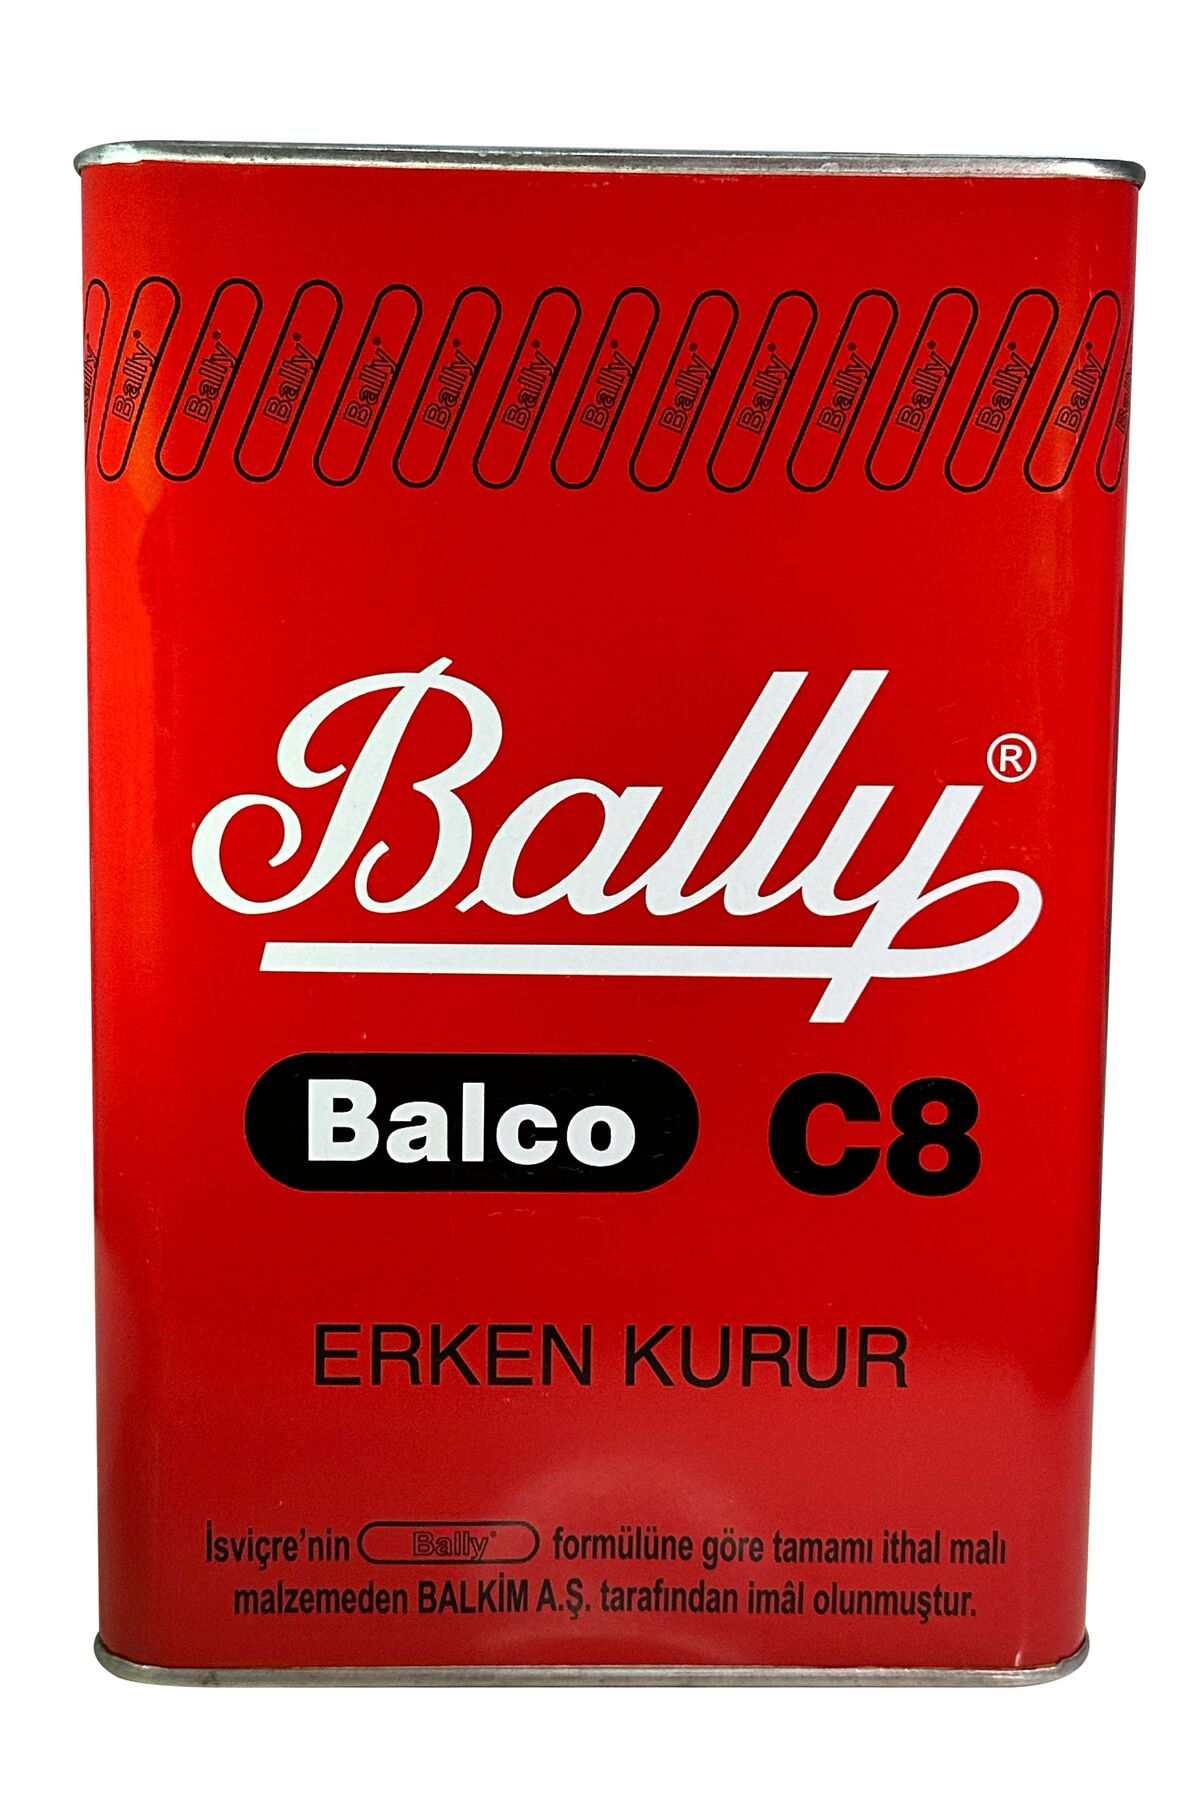 Bally Balco 3200 gr Yeni Tarihli Üretim.